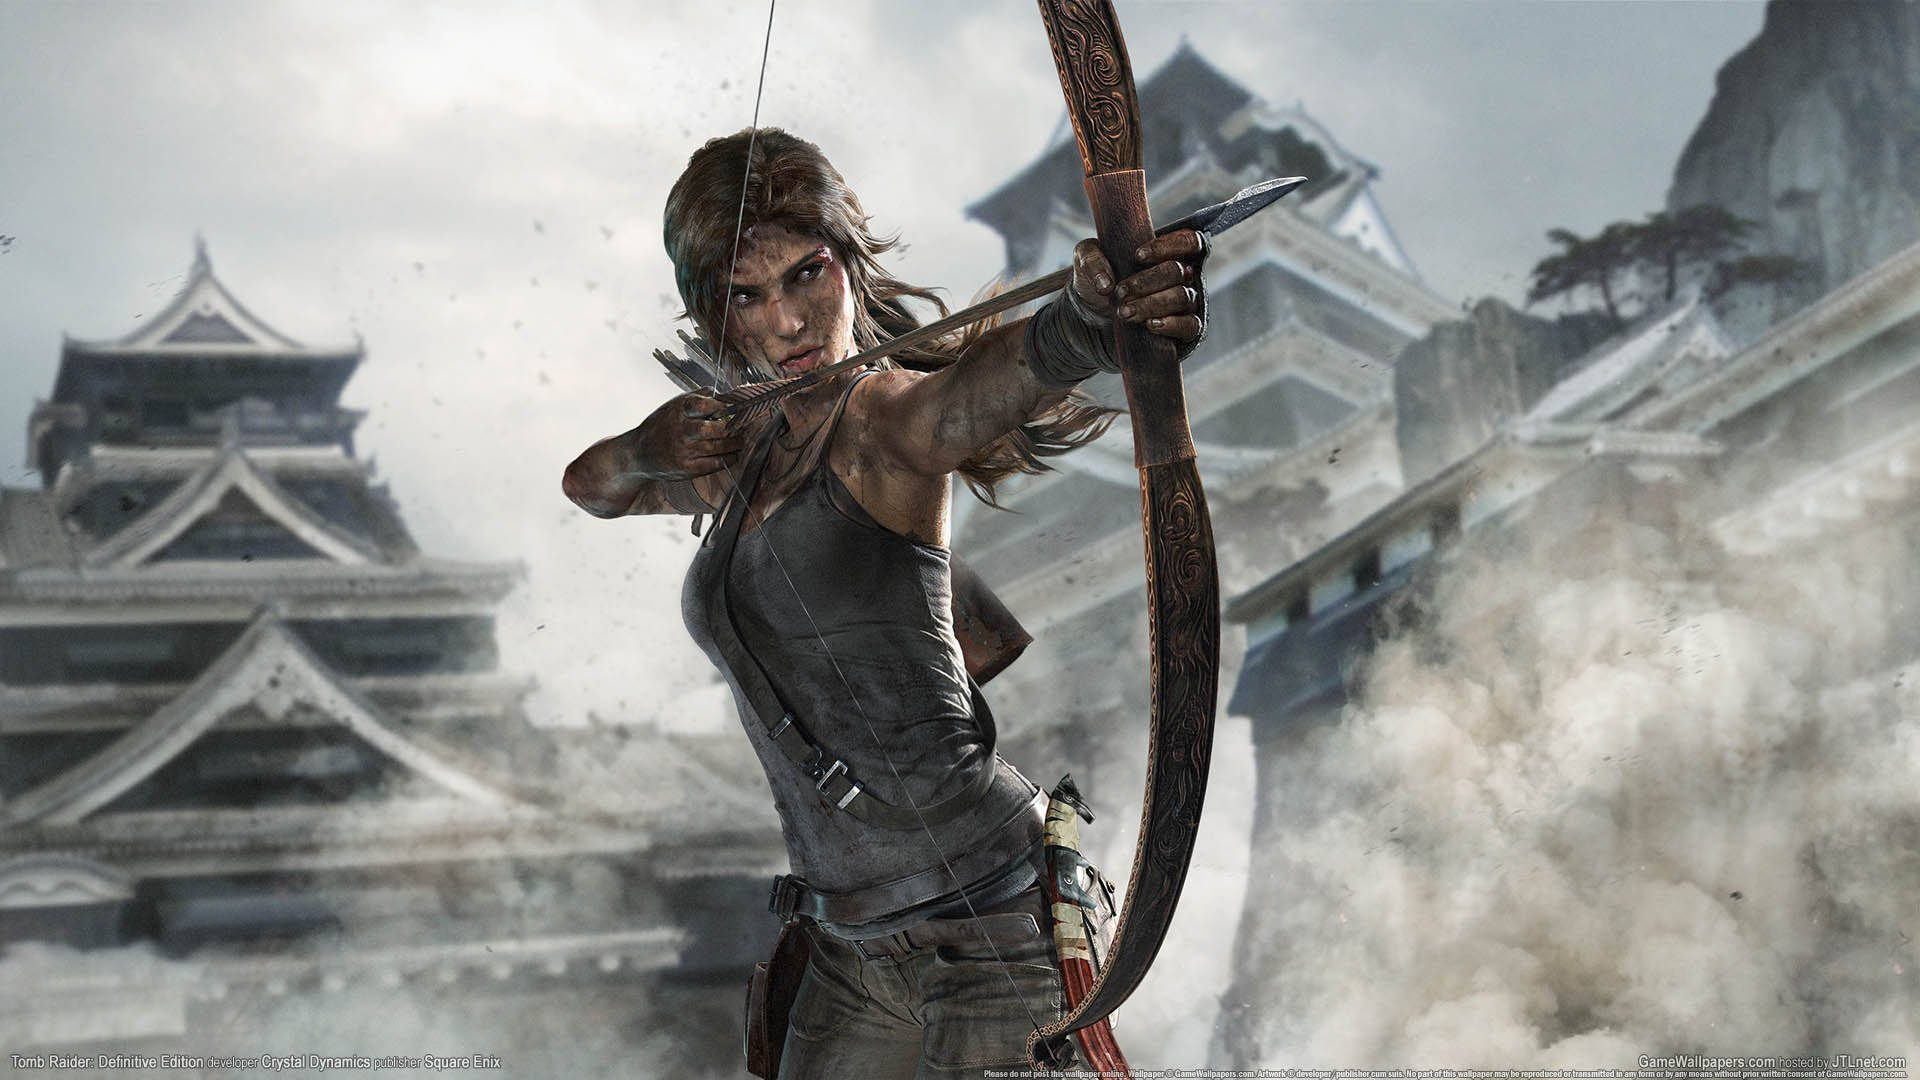 Laracroft Em Ação No Jogo Tomb Raider. Papel de Parede